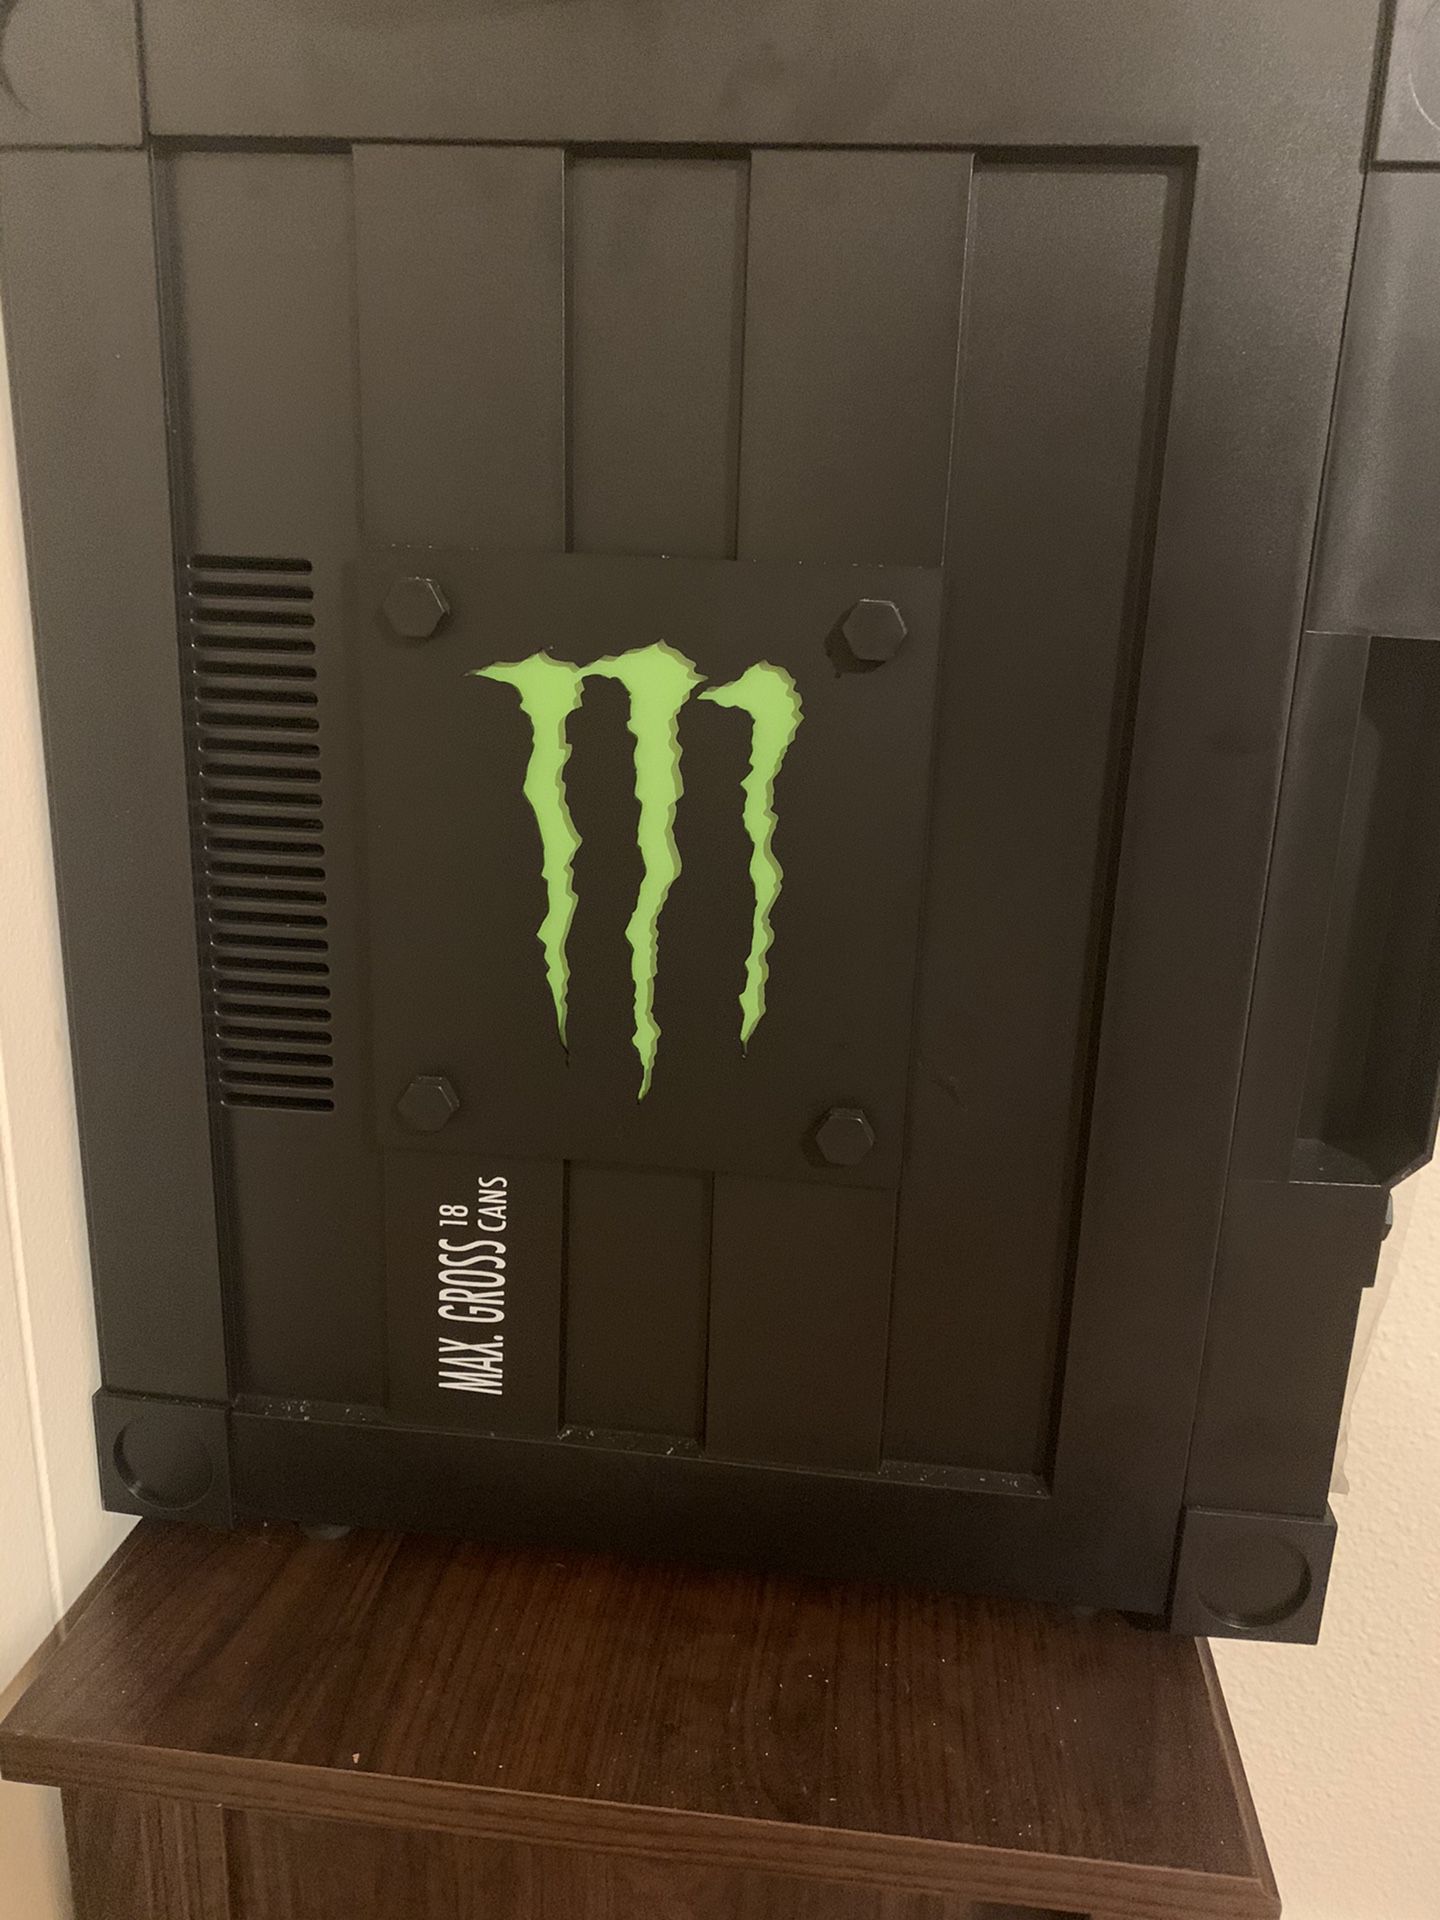 Monster mini fridge.